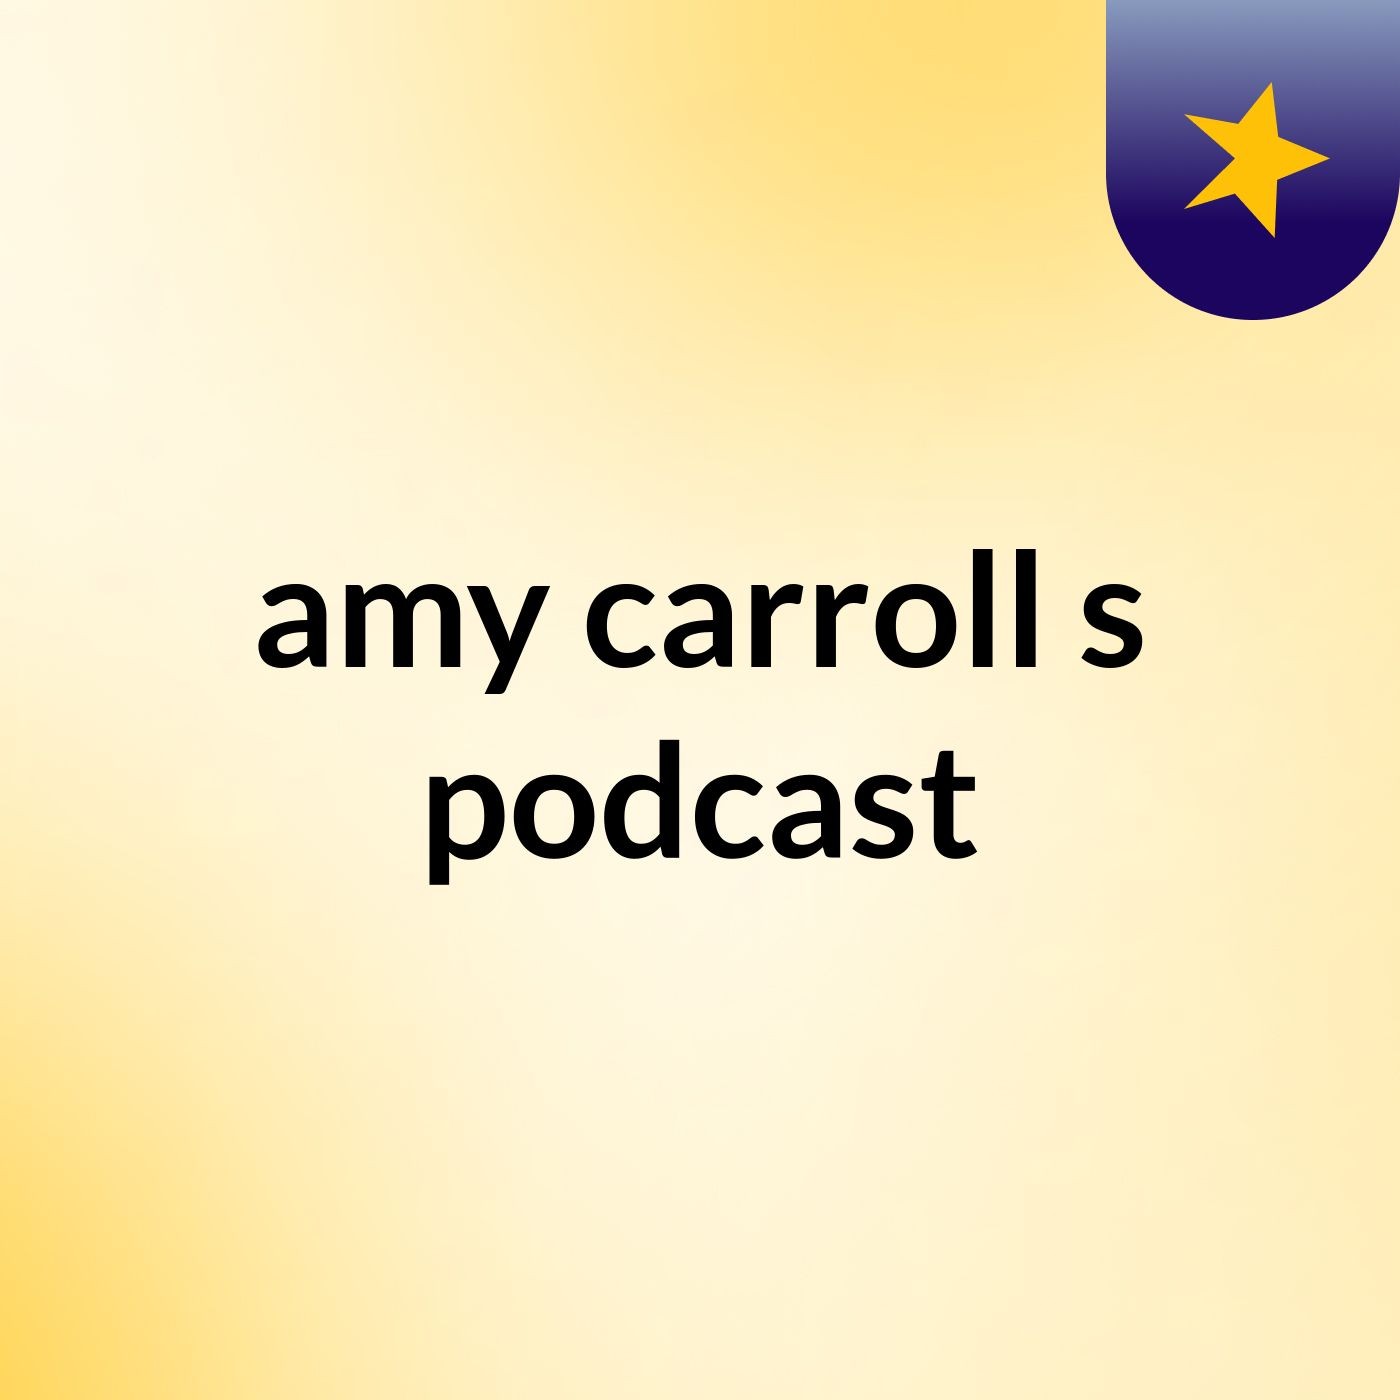 amy carroll's podcast